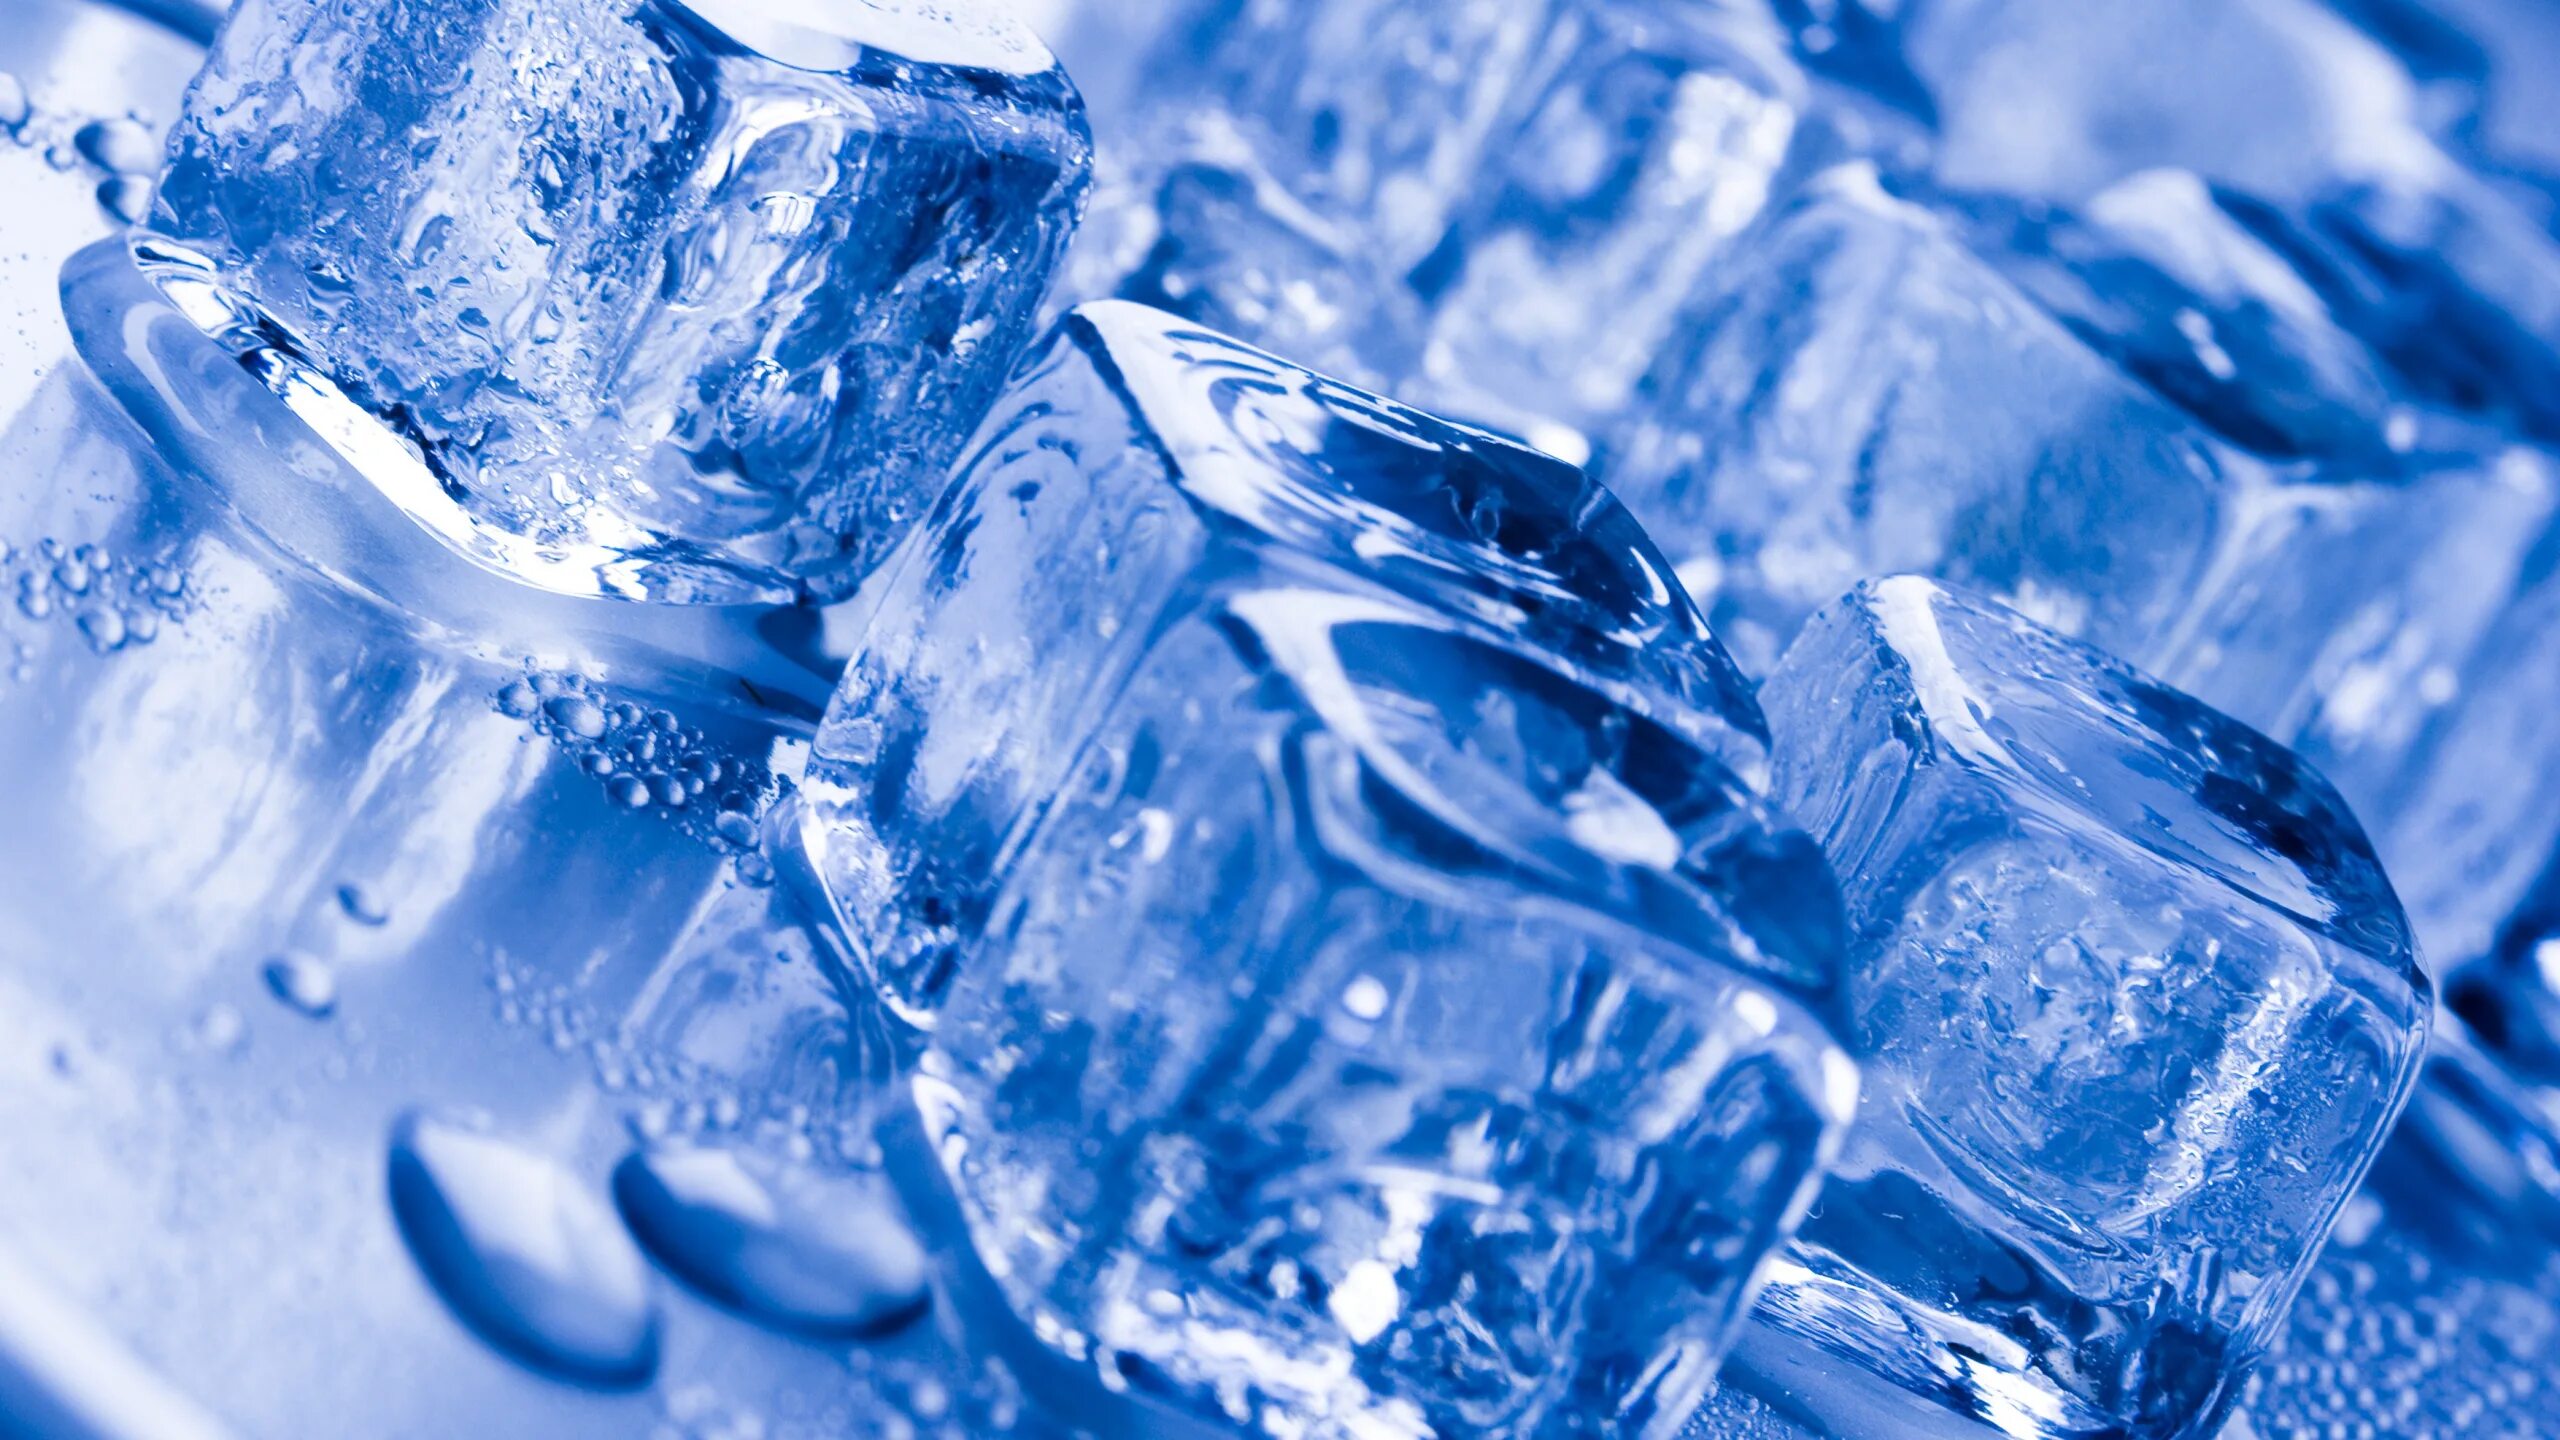 Мелкий лед на воде 4. Кубики льда. Синий лед. Лед. Вода со льдом.